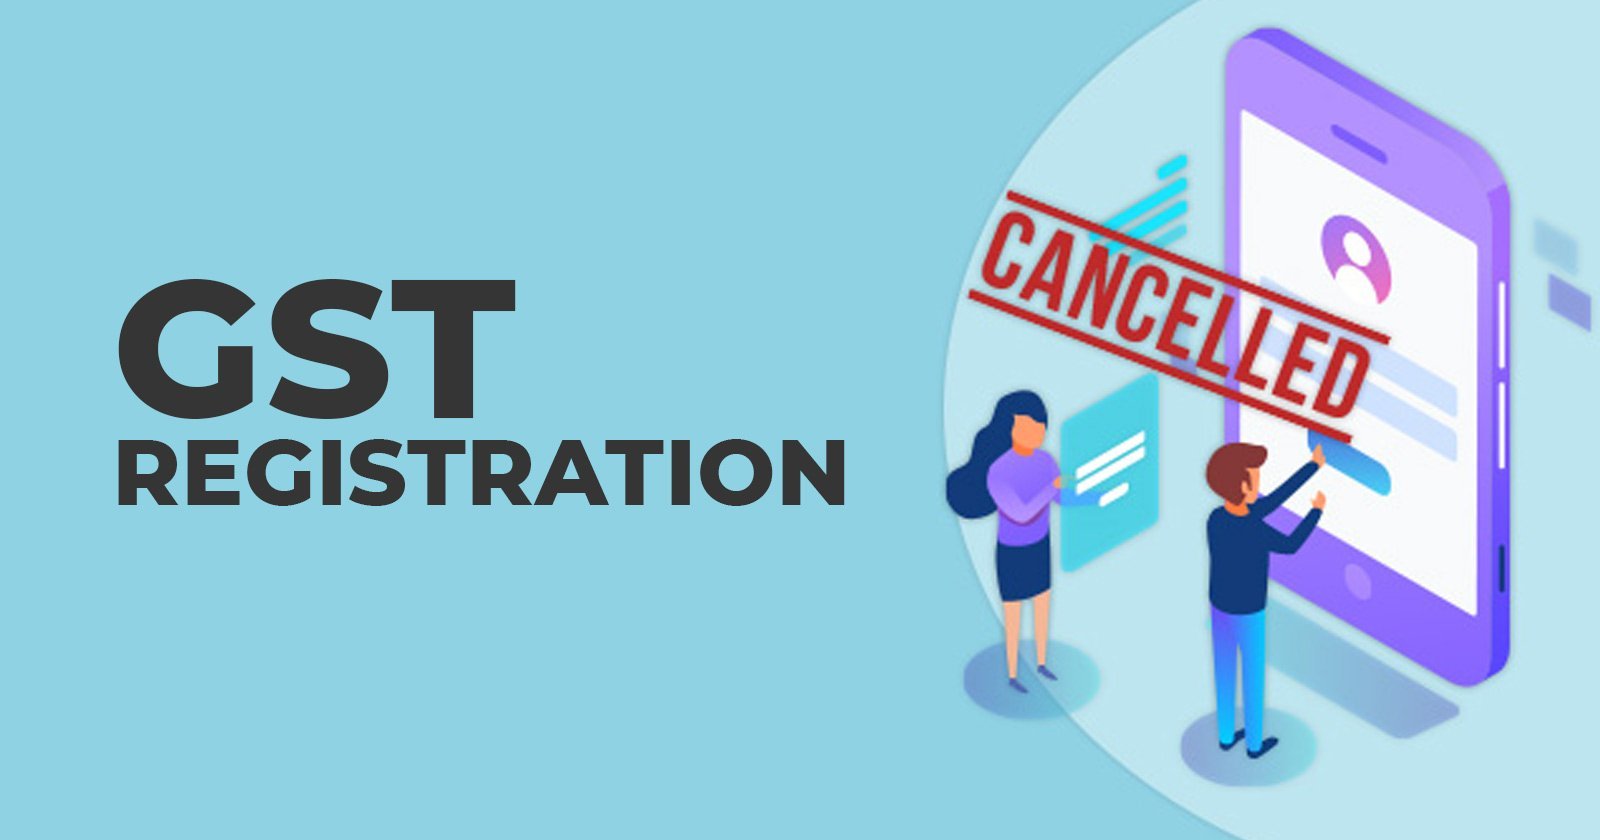 GST Registration - Delhi High Court - GST - GST registration cancellation - GST cancellation - taxscan